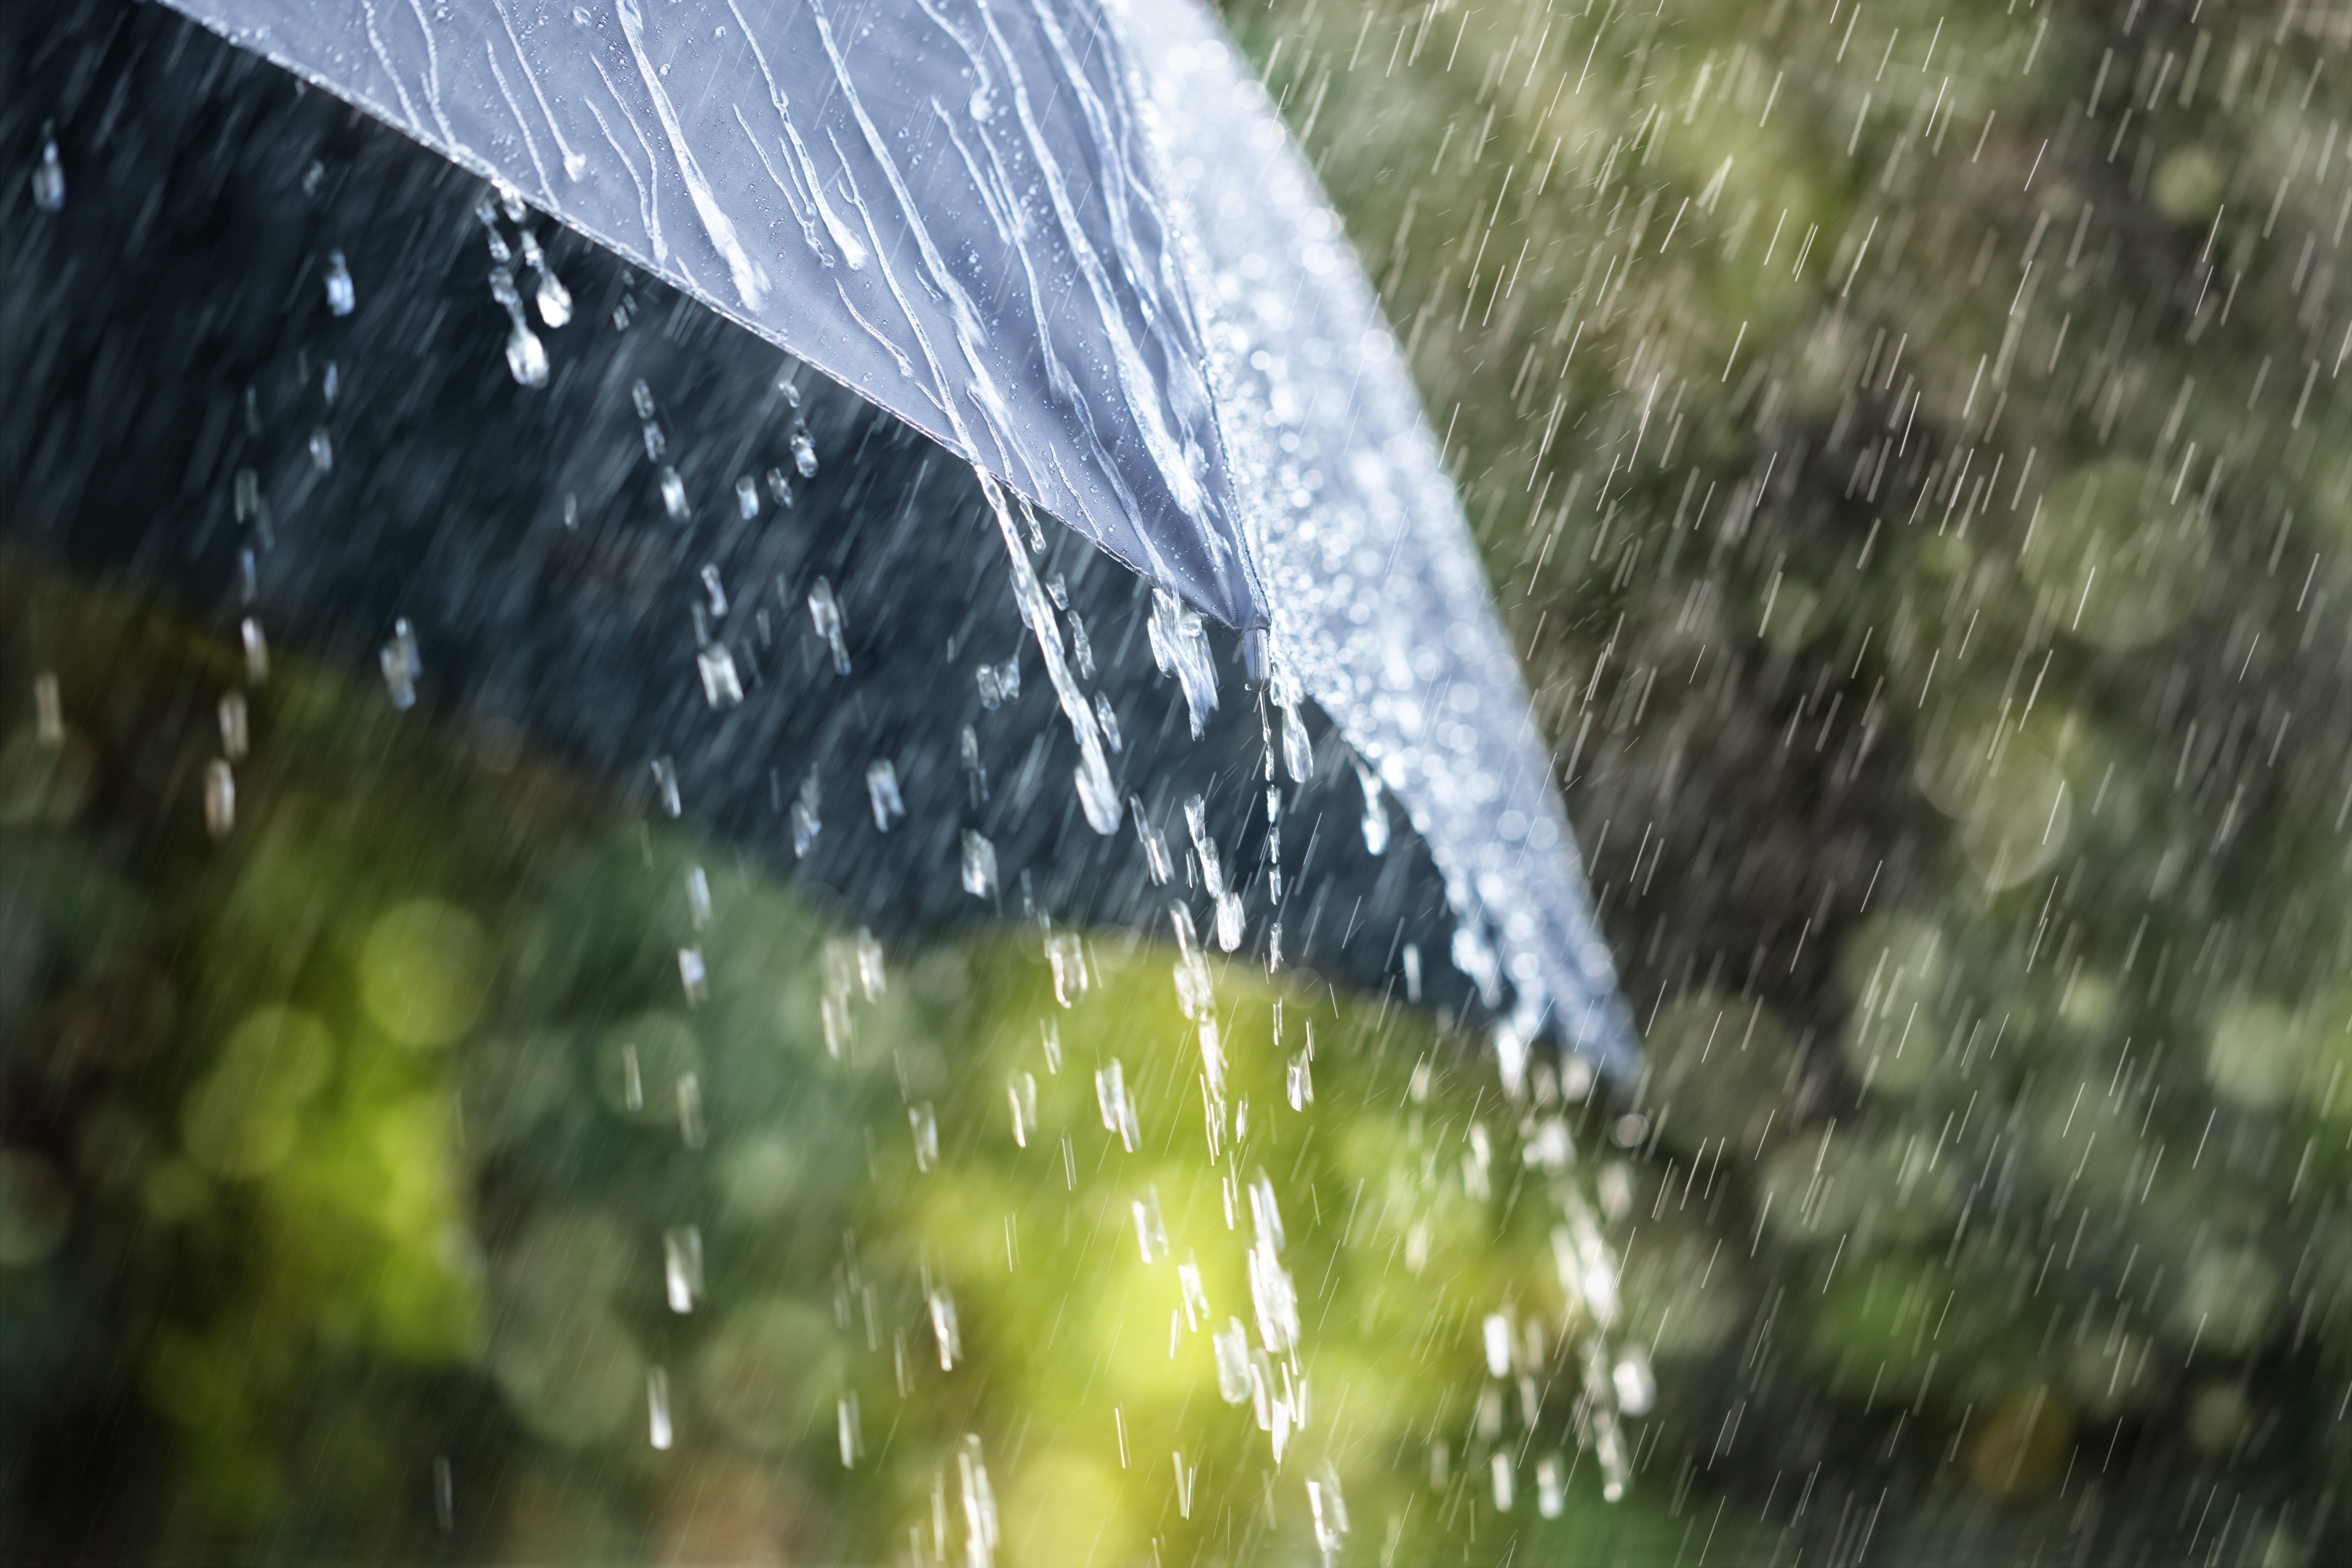 A black umbrella in the rain. | Photo: Shutterstock